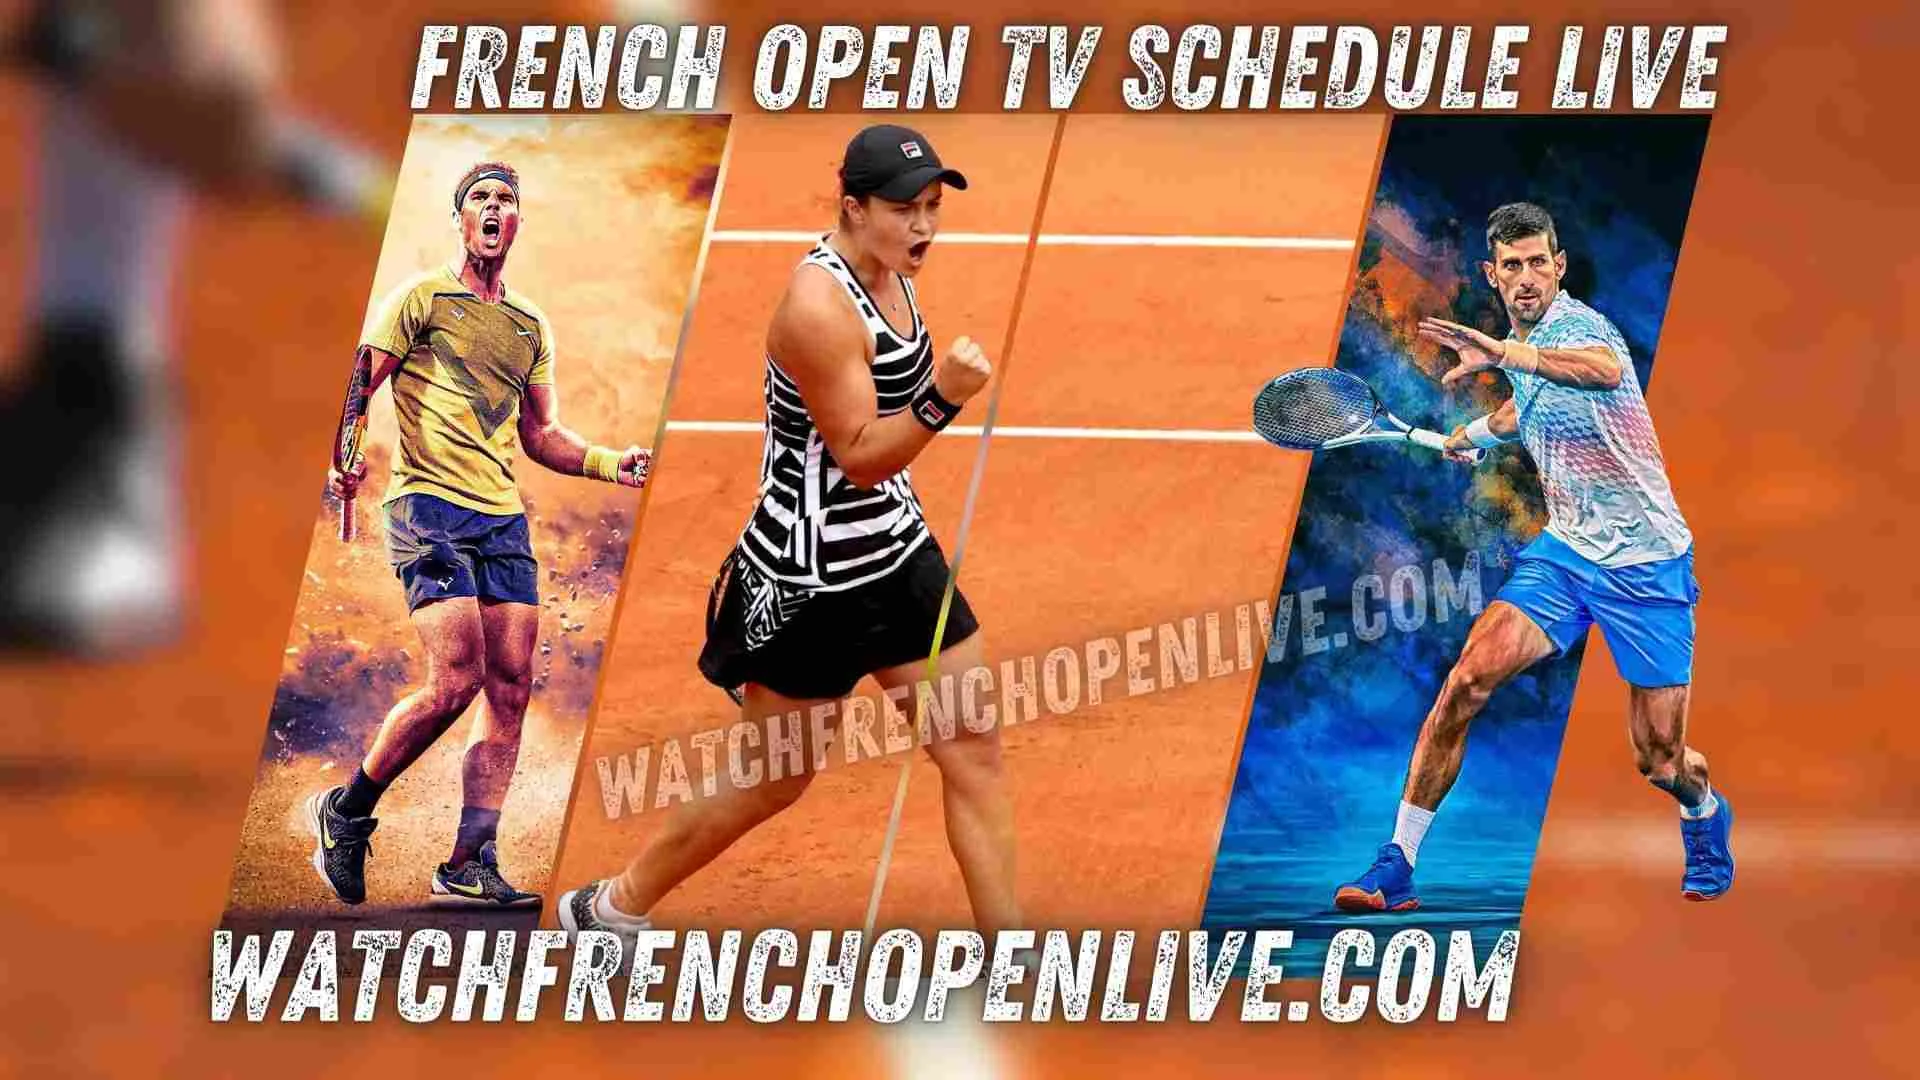 roland-garros-live-stream-french-open-tv-schedule-tennis